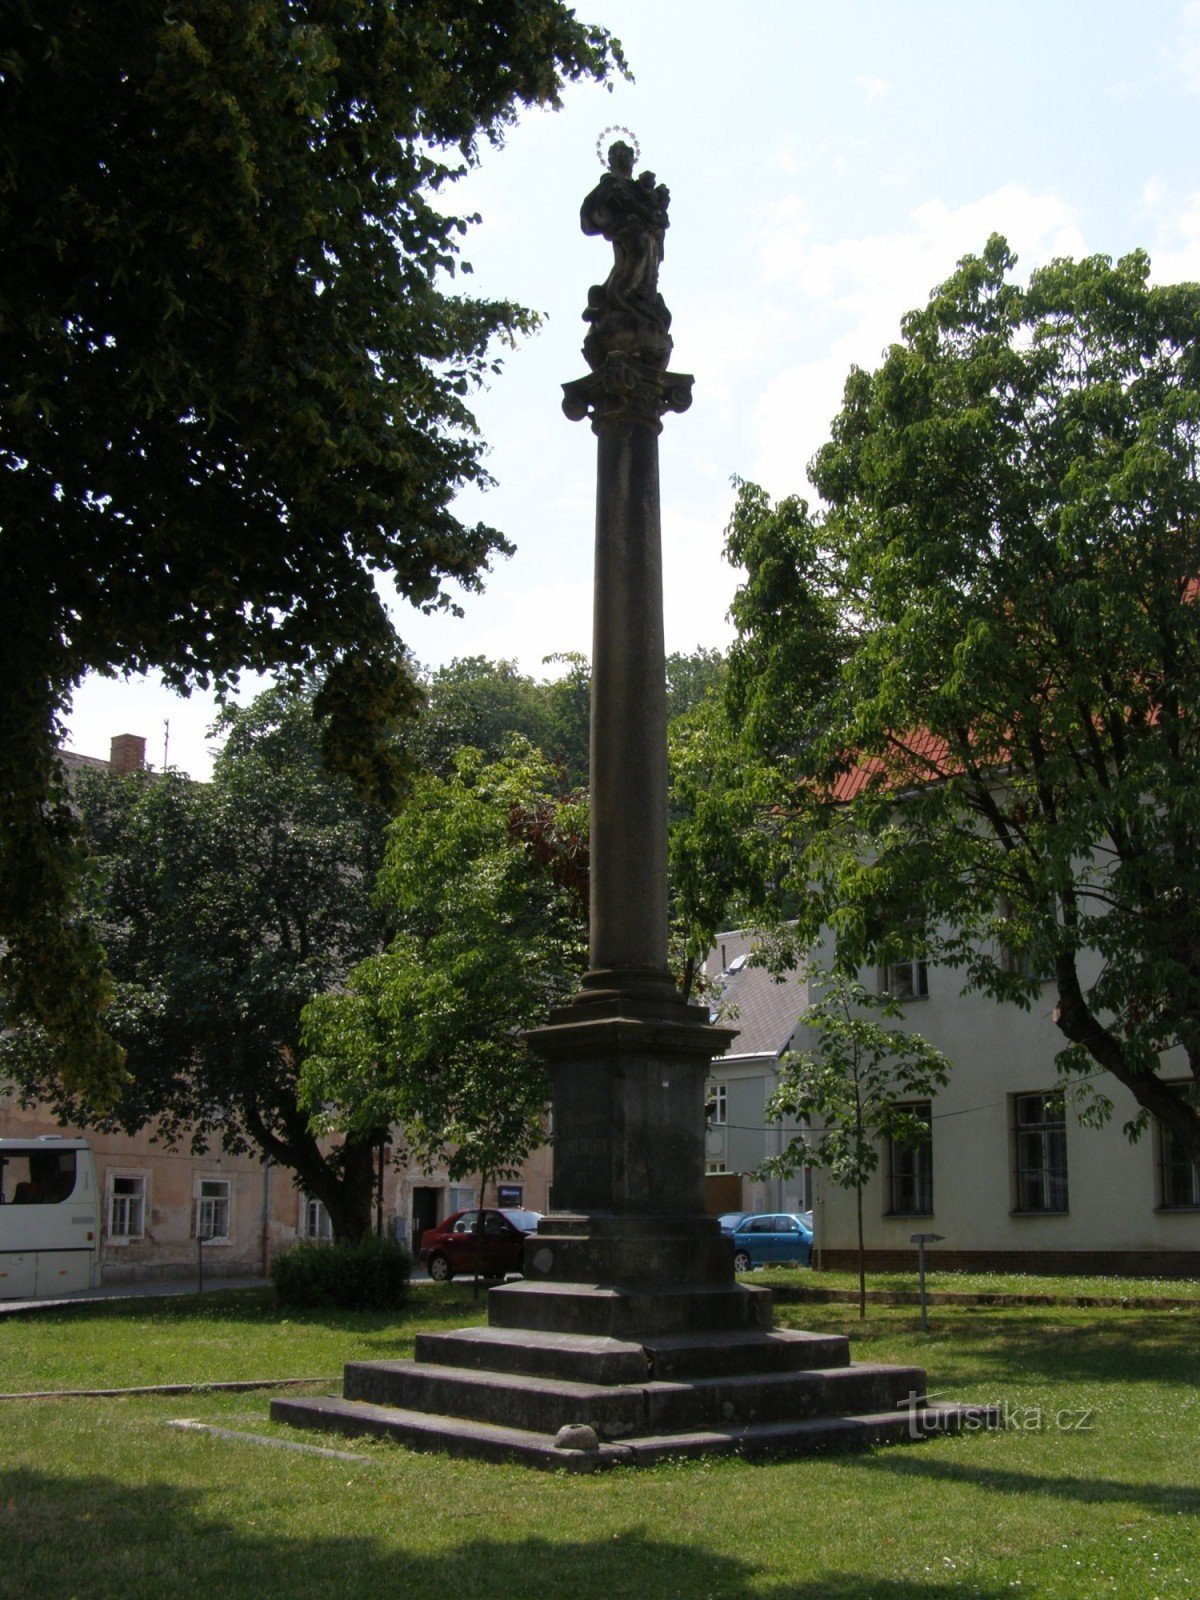 Árbol de arce - una columna con una estatua de Nuestra Señora